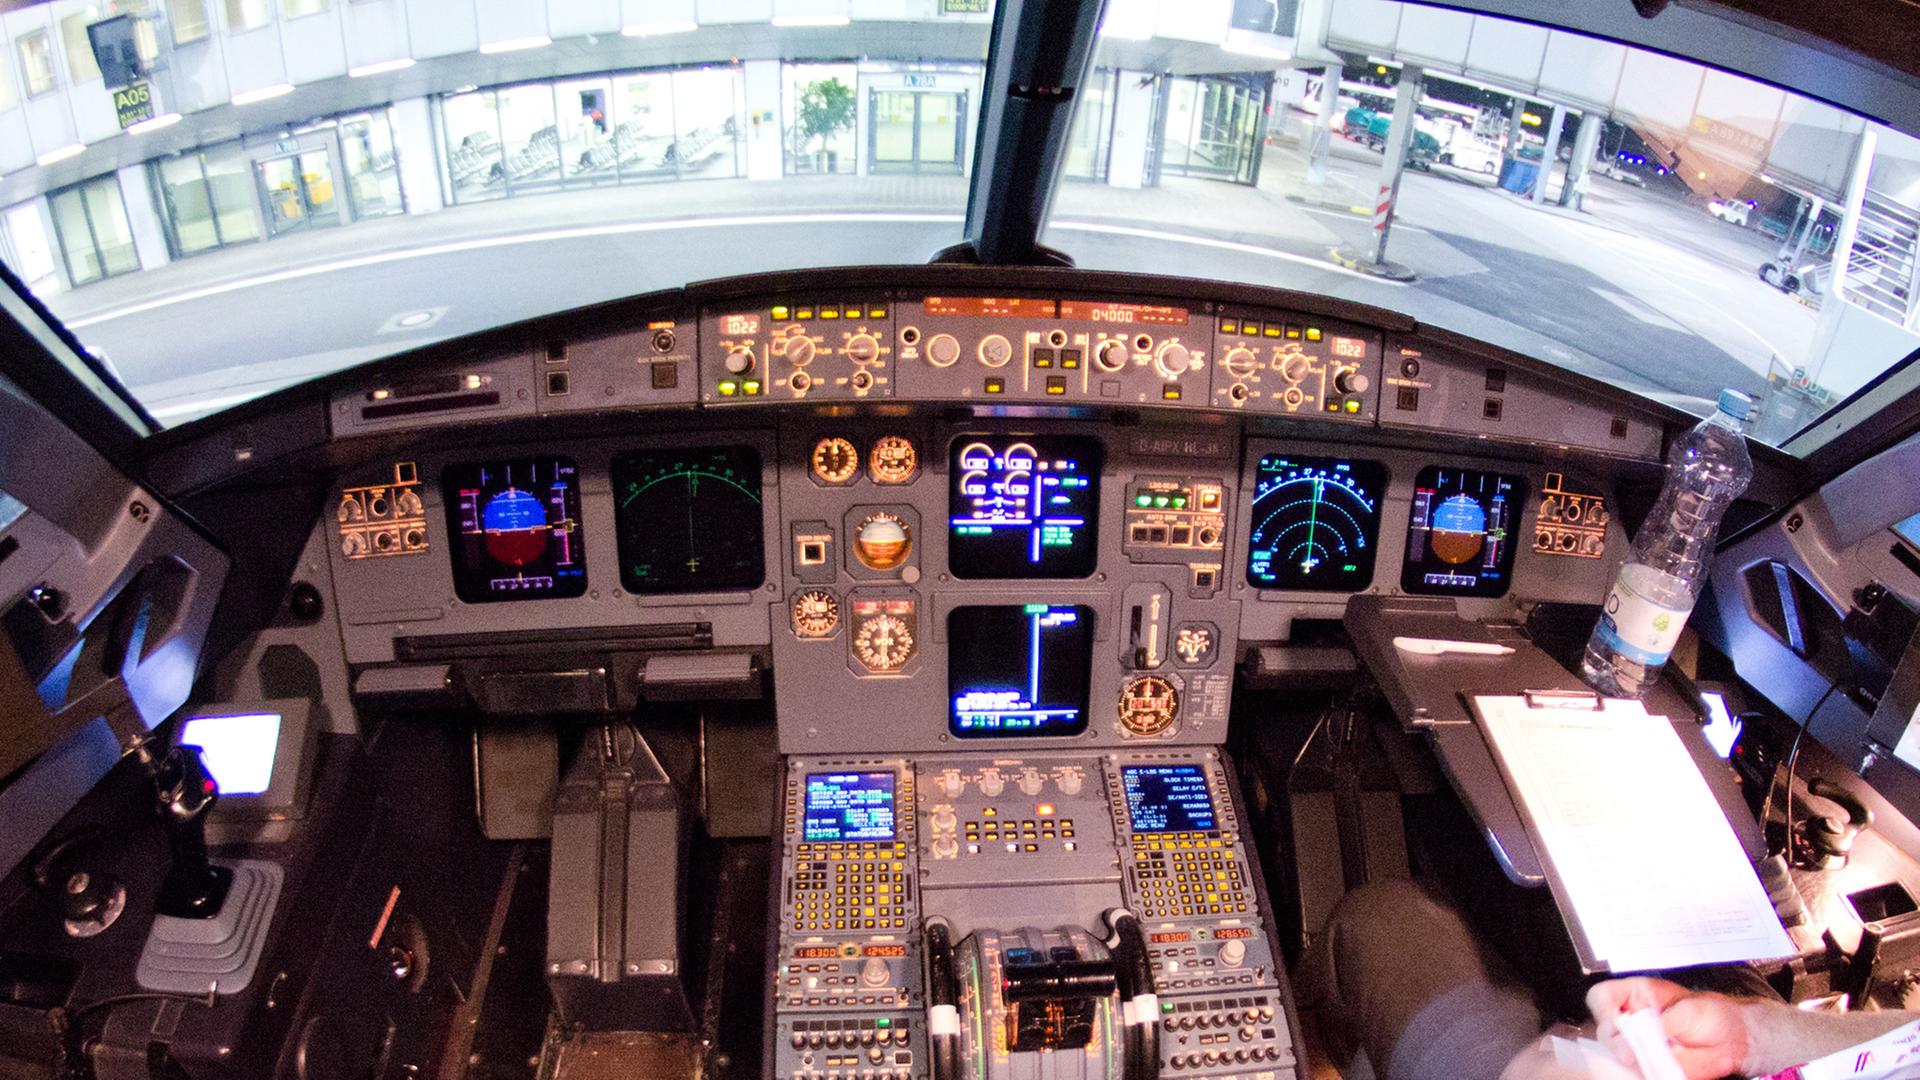 Blick in das Cockpit des verunglückten Airbus A320 mit der Kennung D-AIPX der Fluggesellschaft Germanwings. Das Bild entstand am 22.03.2015 auf dem Flughafen in Düsseldorf (Nordrhein-Westfalen) nach einem der letzten Flüge vor dem Absturz der Maschine in Frankreich.